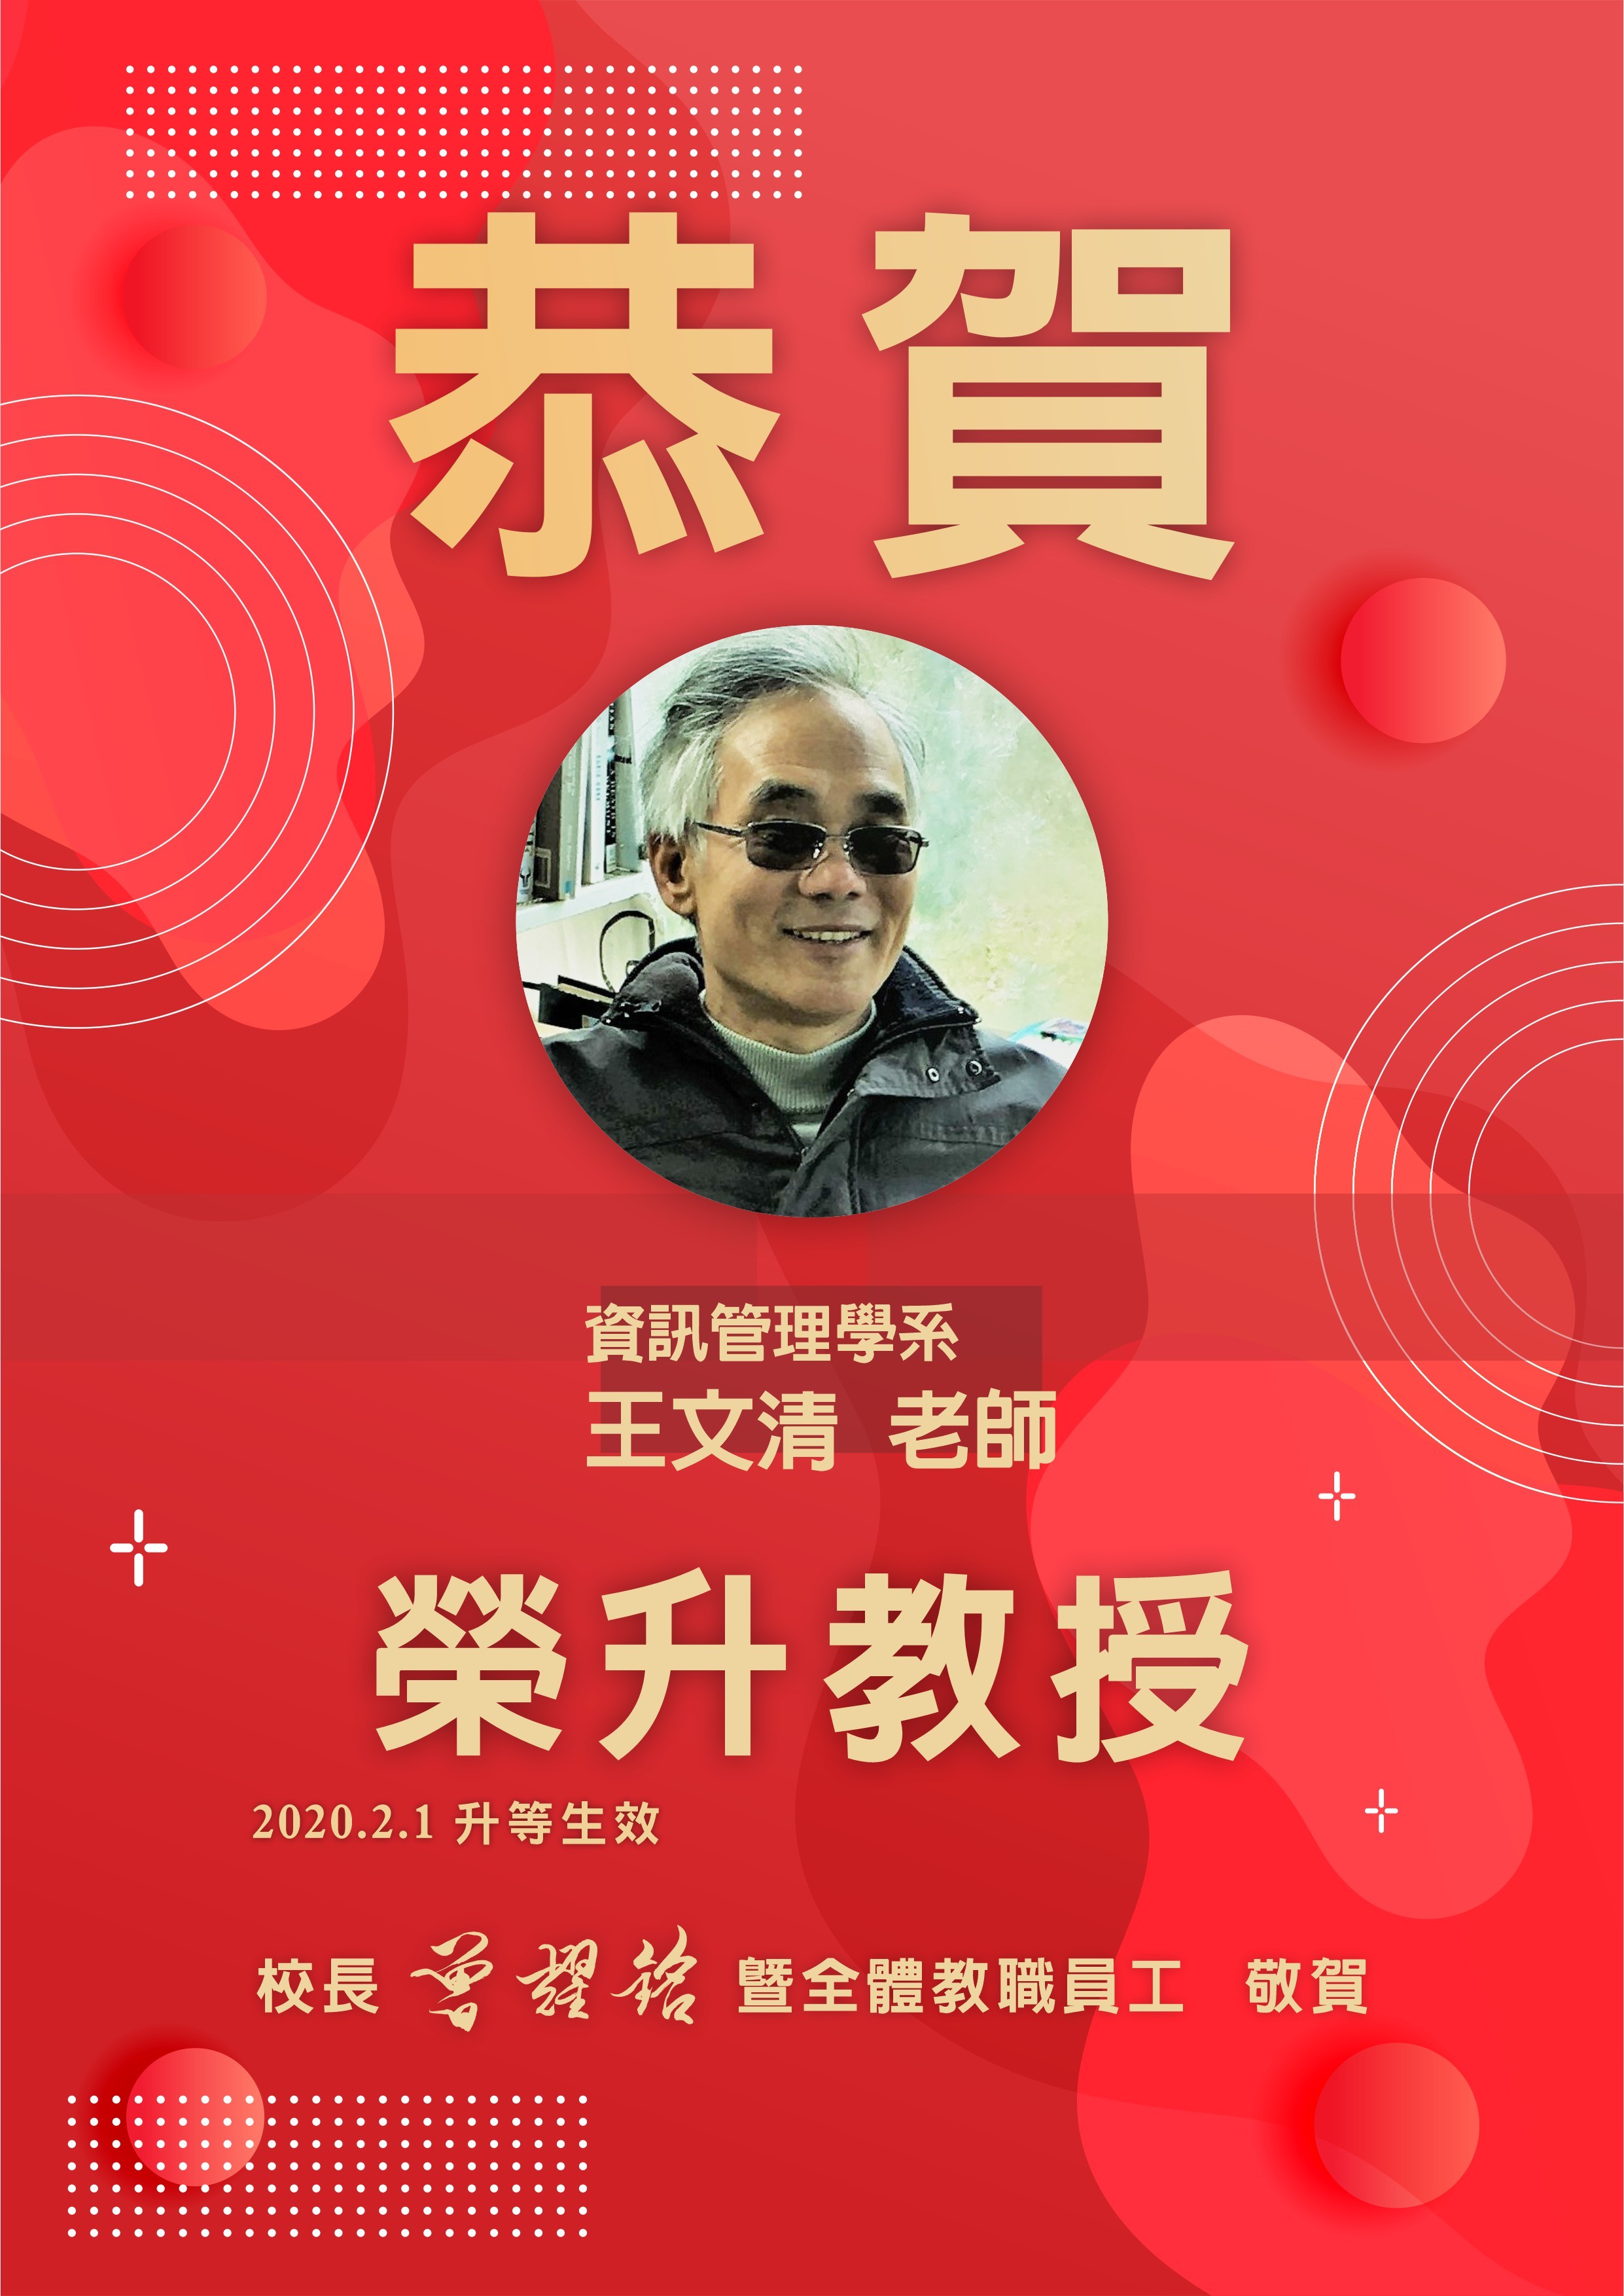 資訊管理學系 王文清老師榮升教授